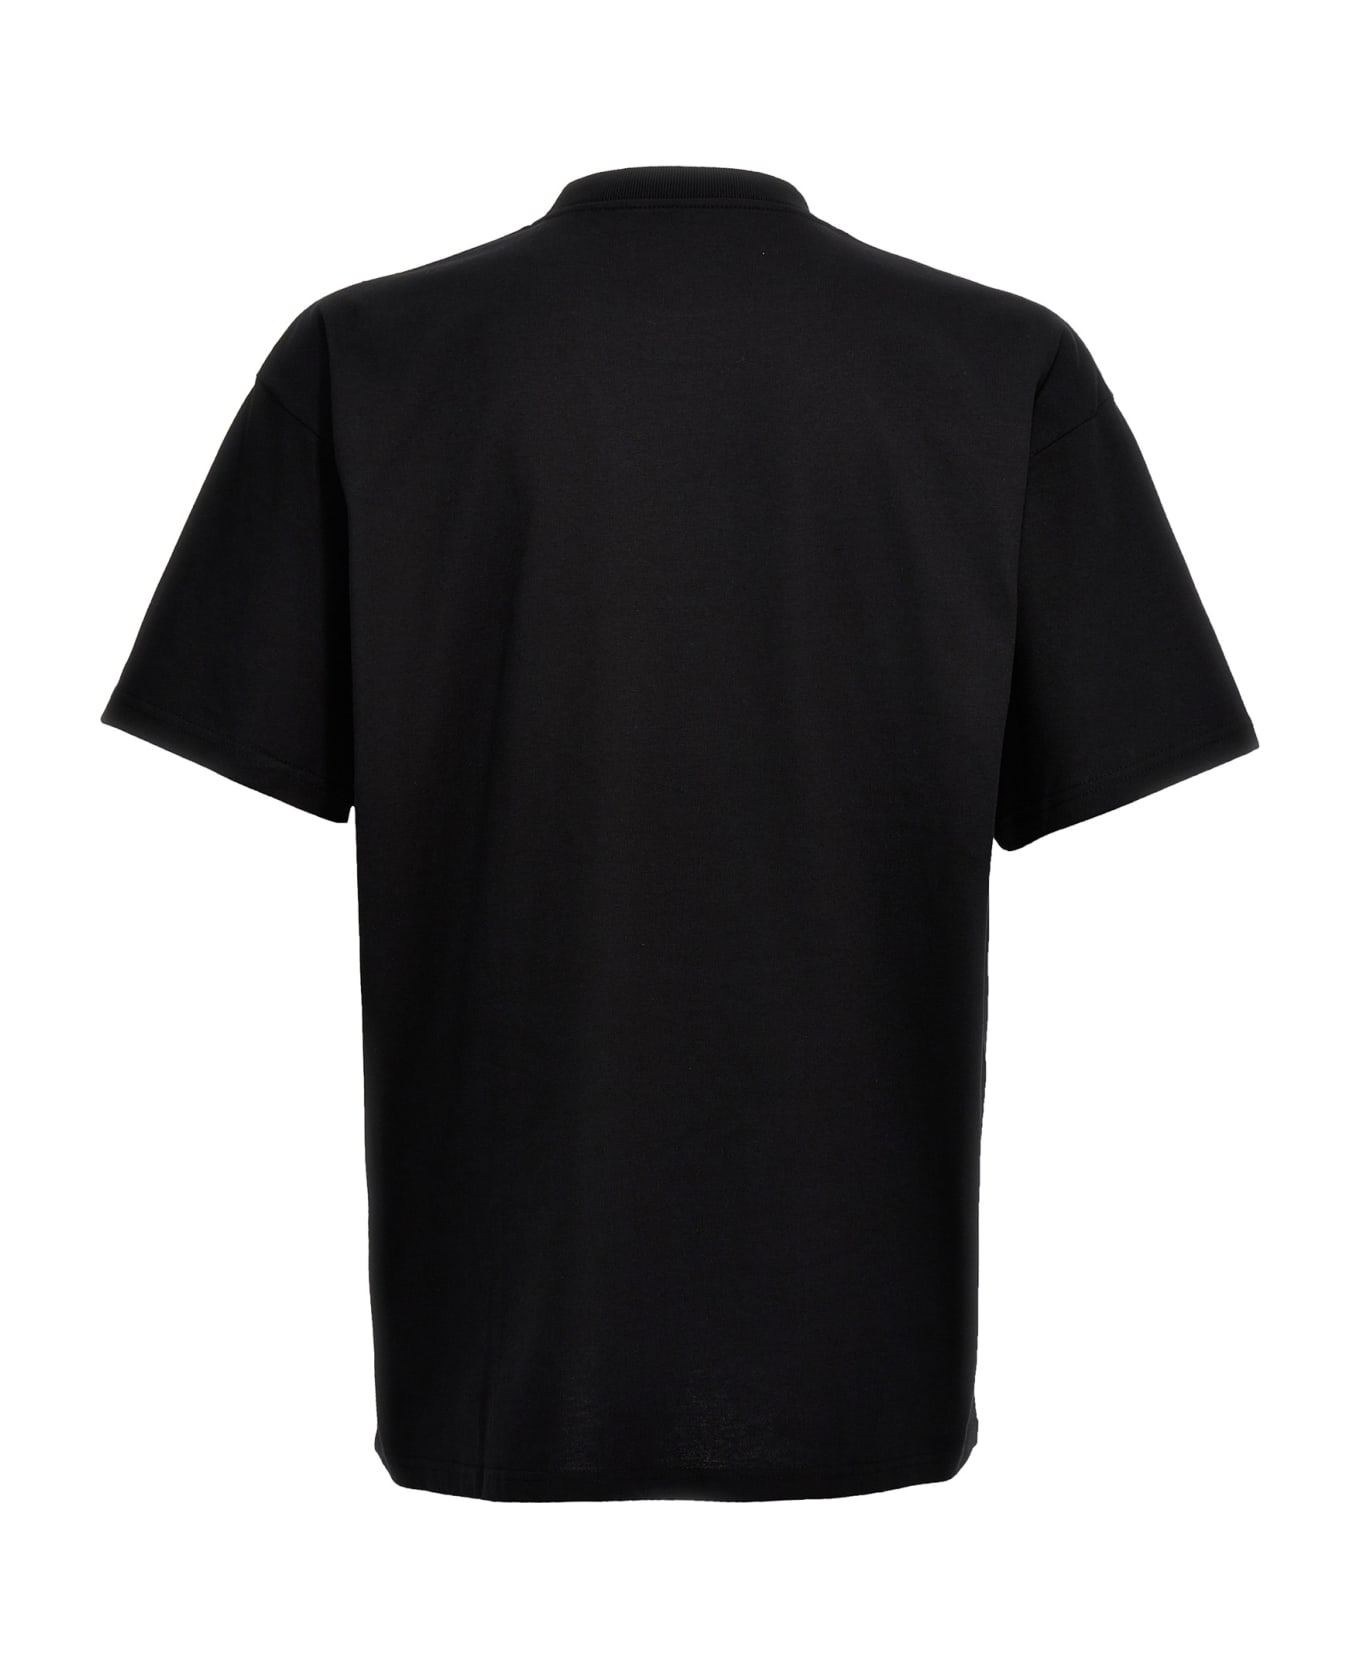 Carhartt 'icons' T-shirt - Nero